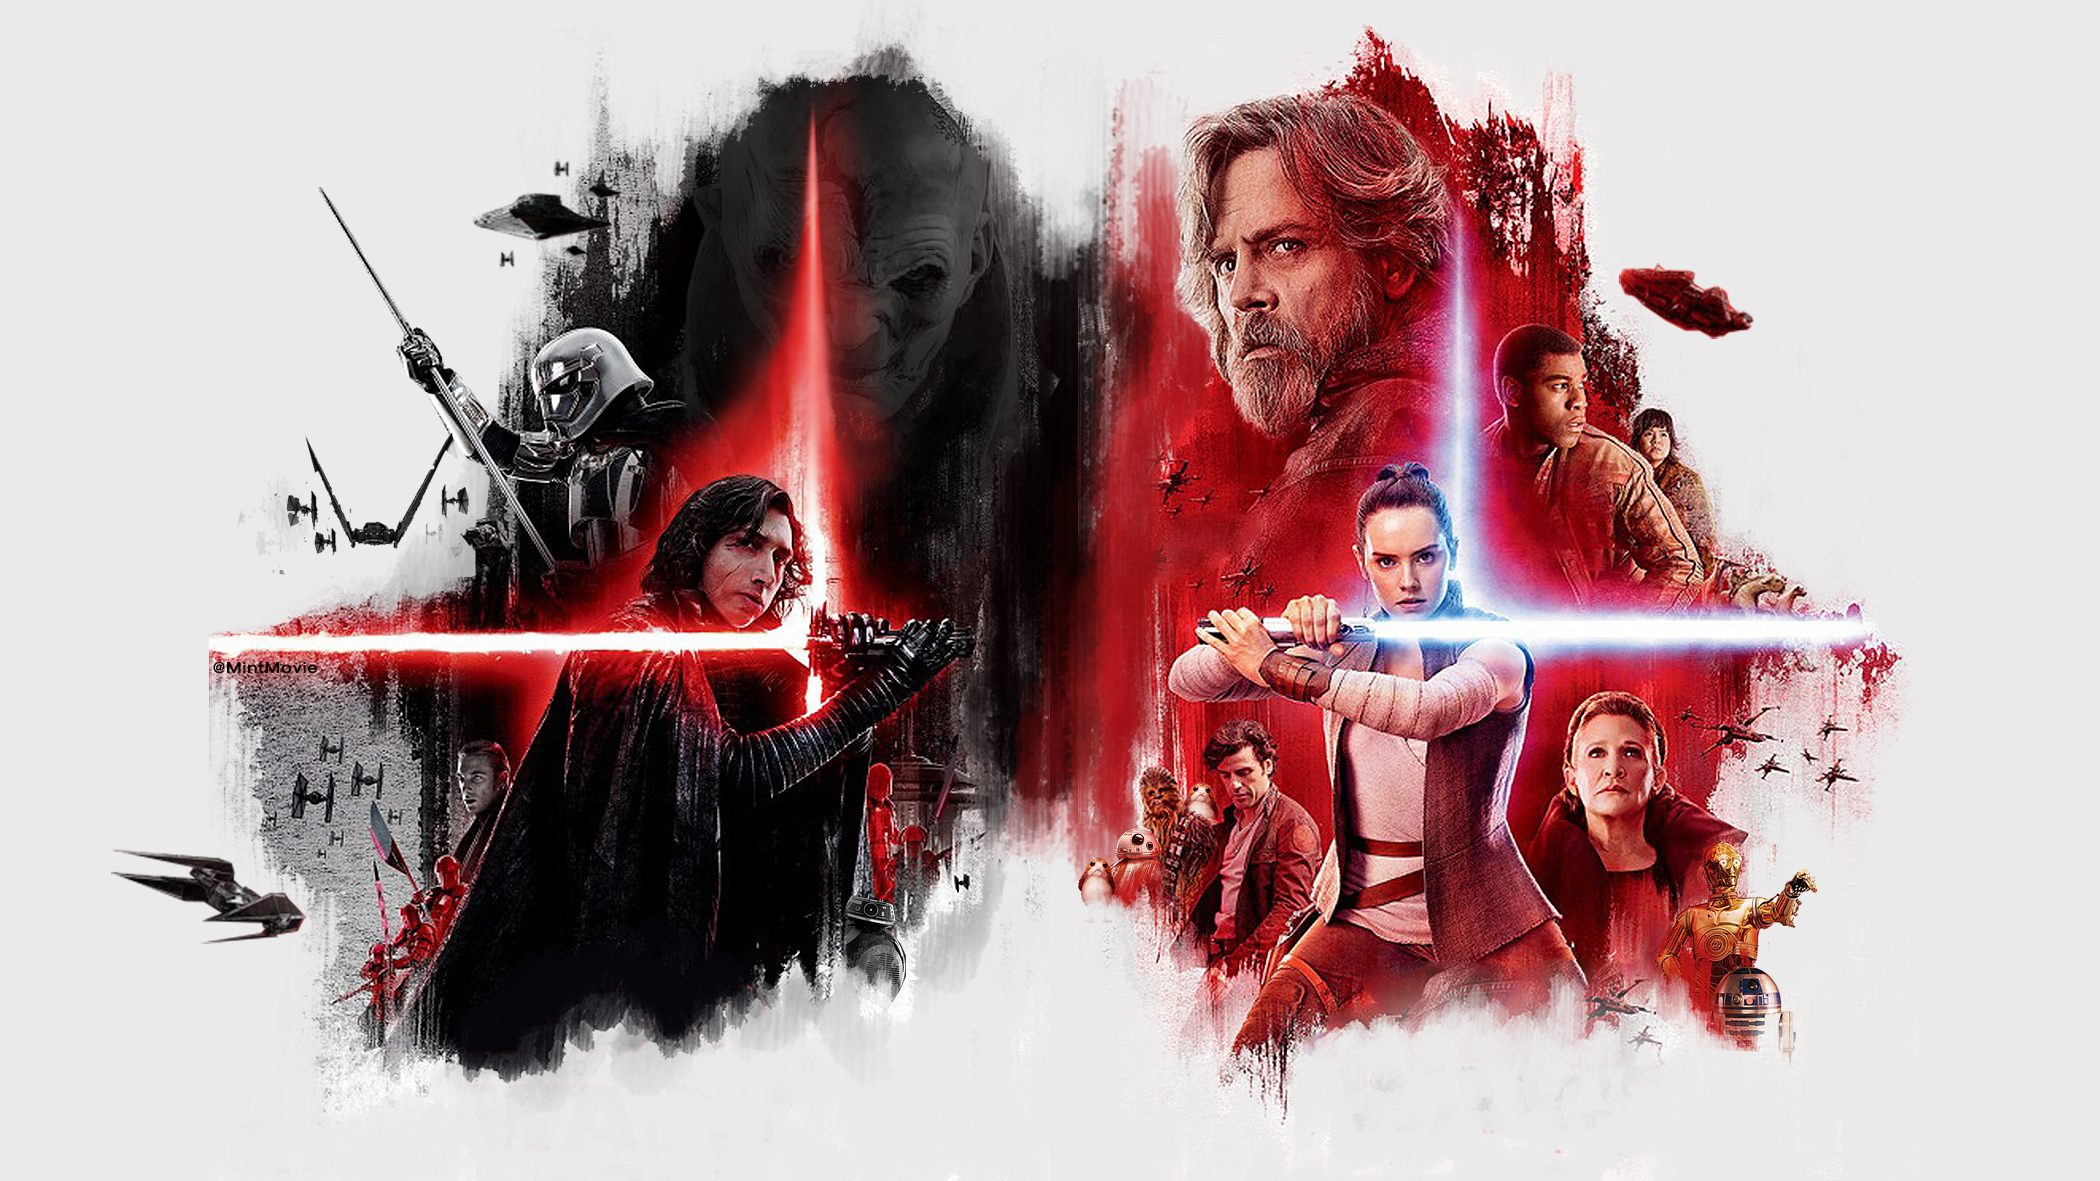 General 2100x1181 fan art Star Wars: The Last Jedi movies Rey (Star Wars) Luke Skywalker Leia Organa Kylo Ren lightsaber